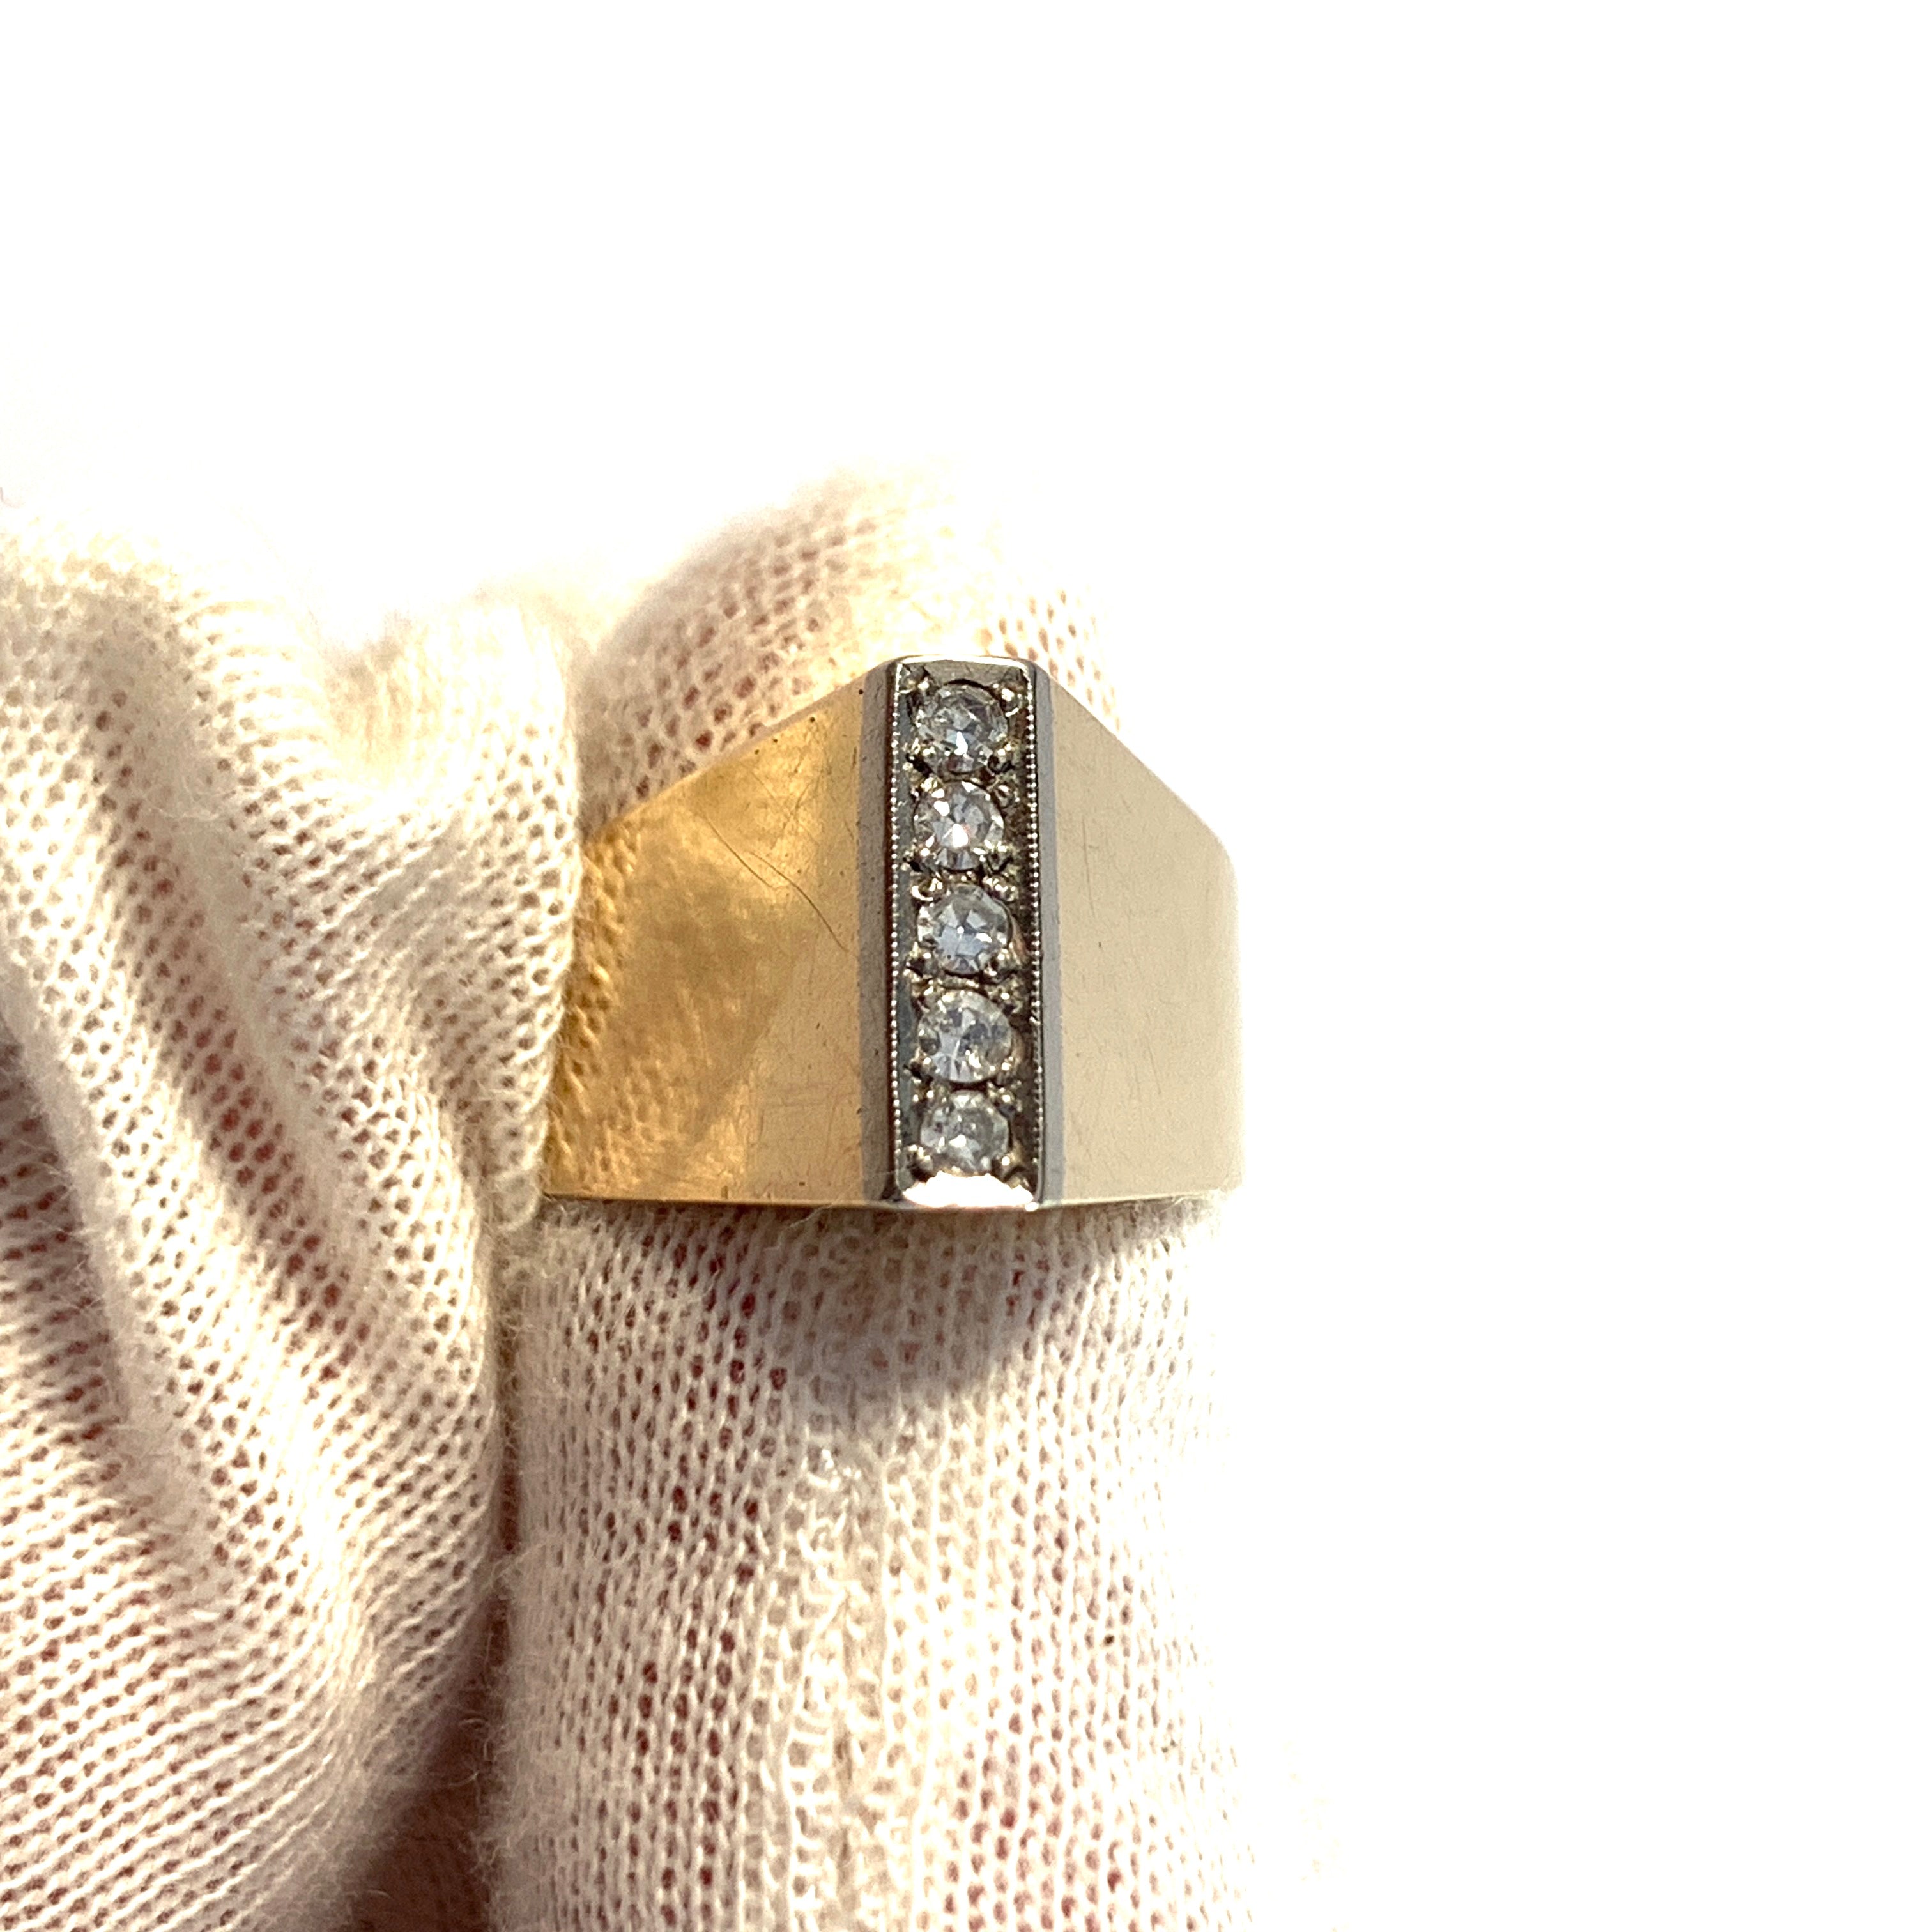 Fryklund & Pålsson, Sweden year 1961. Vintage 18k Gold Diamond Ring.